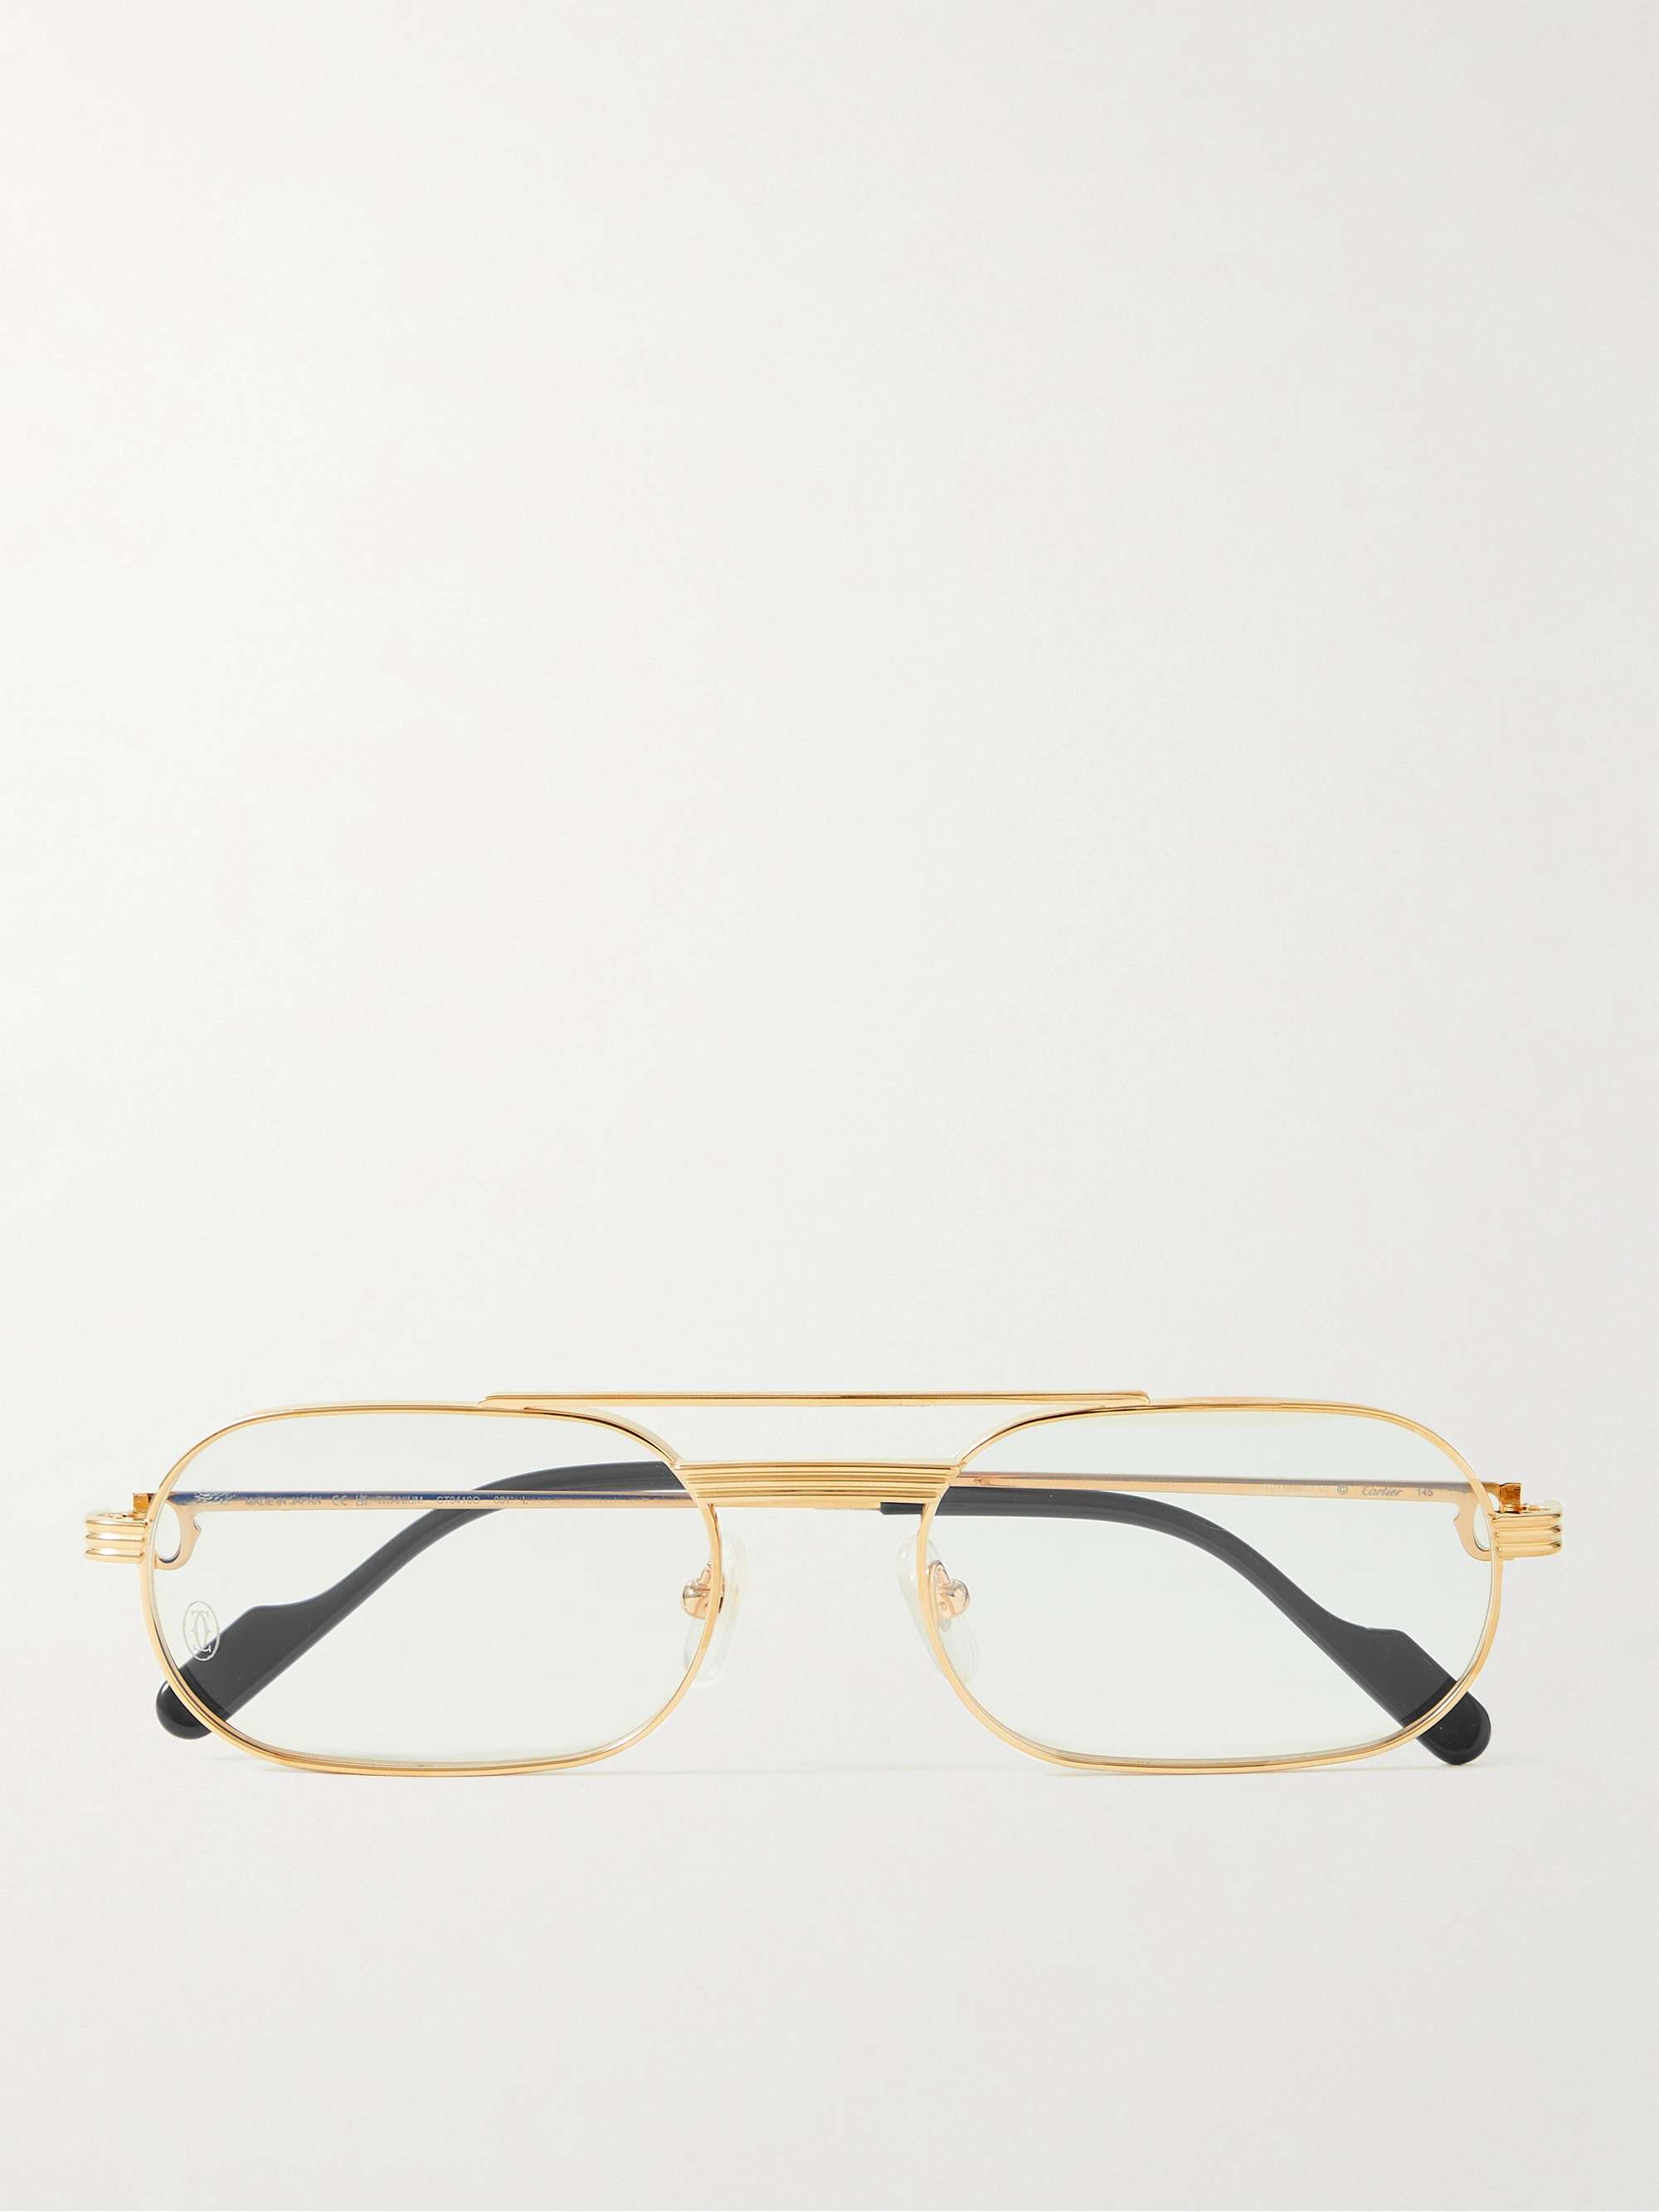 ذهبي نظارات طبية بدون إطار من معدن ذهبي اللون | CARTIER EYEWEAR | MR PORTER